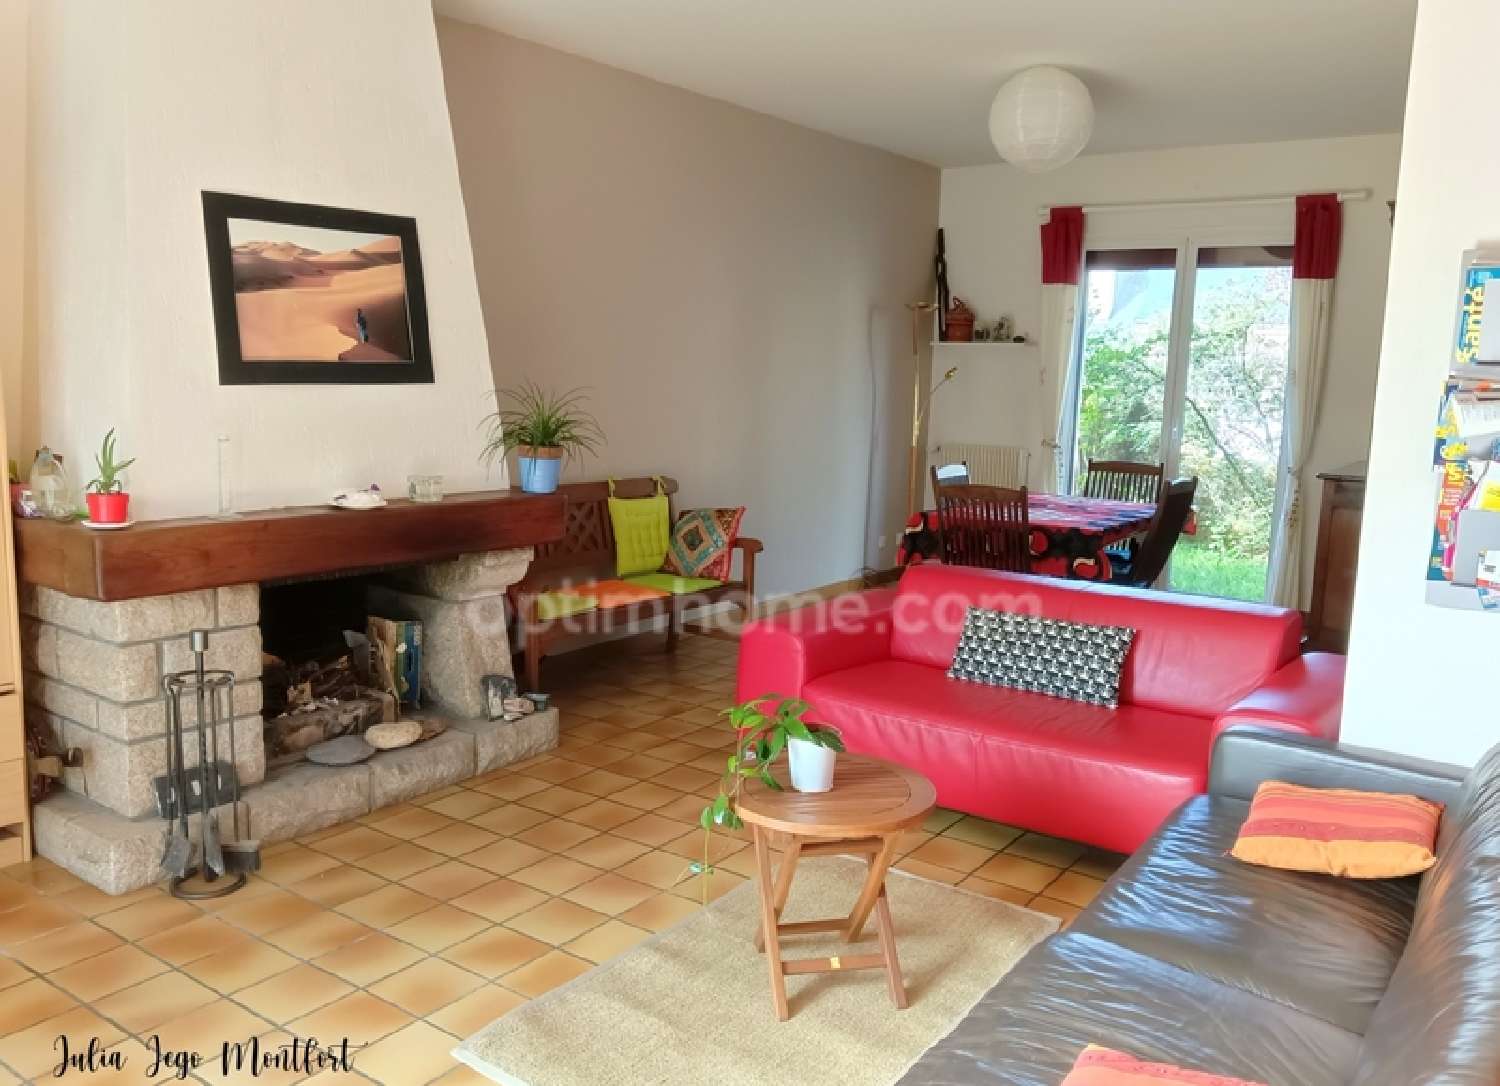  à vendre maison Saint-Herblain Loire-Atlantique 5